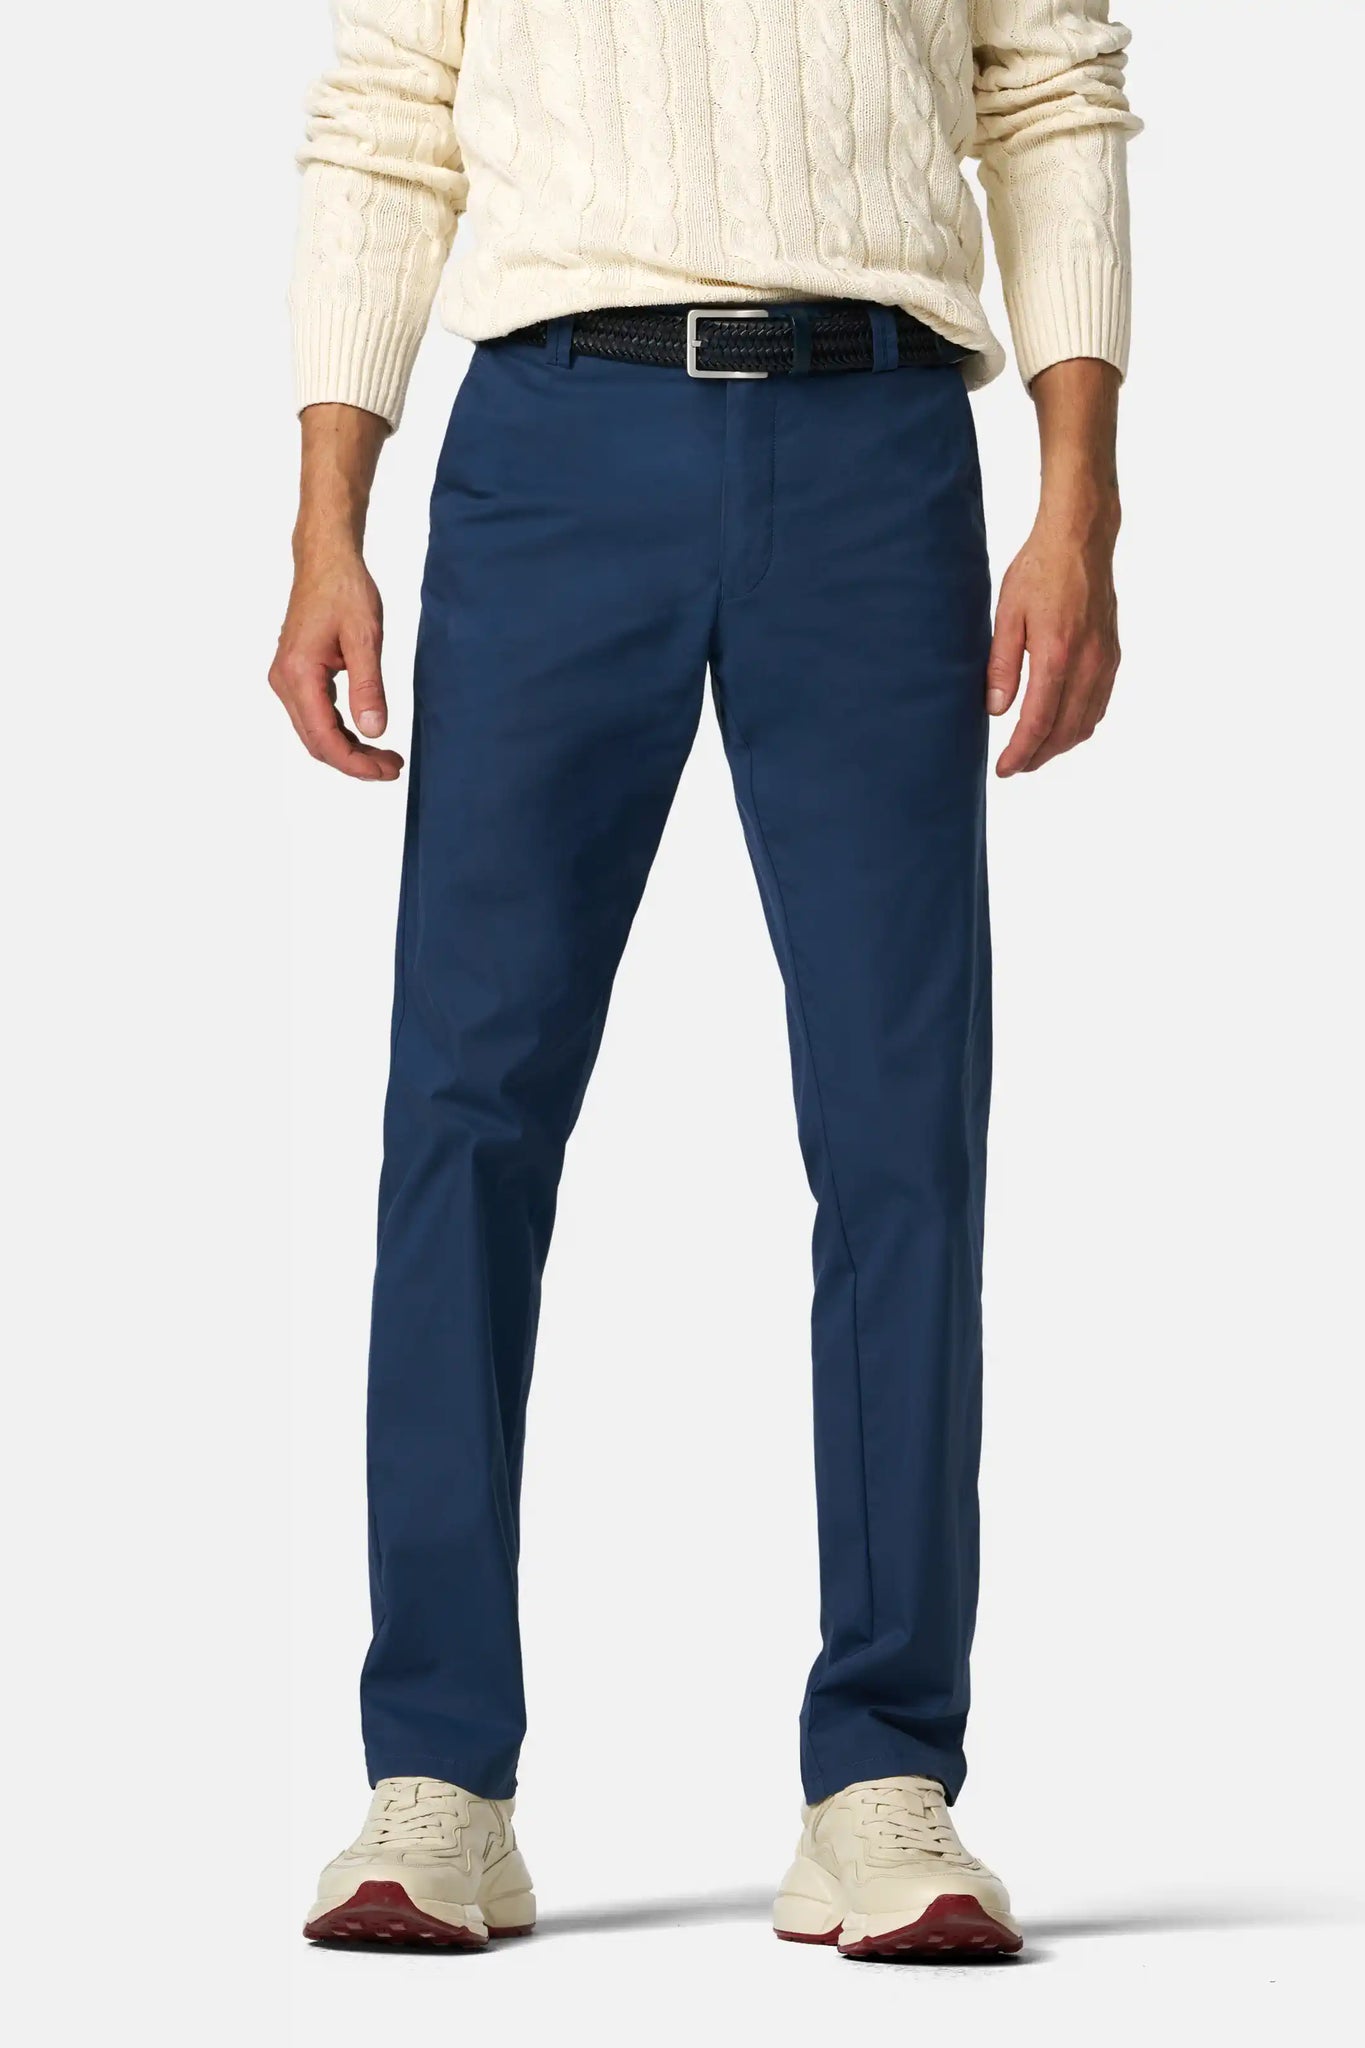 Pantalone Bonn in Cotone Ultra Leggero / Bluette - Ideal Moda